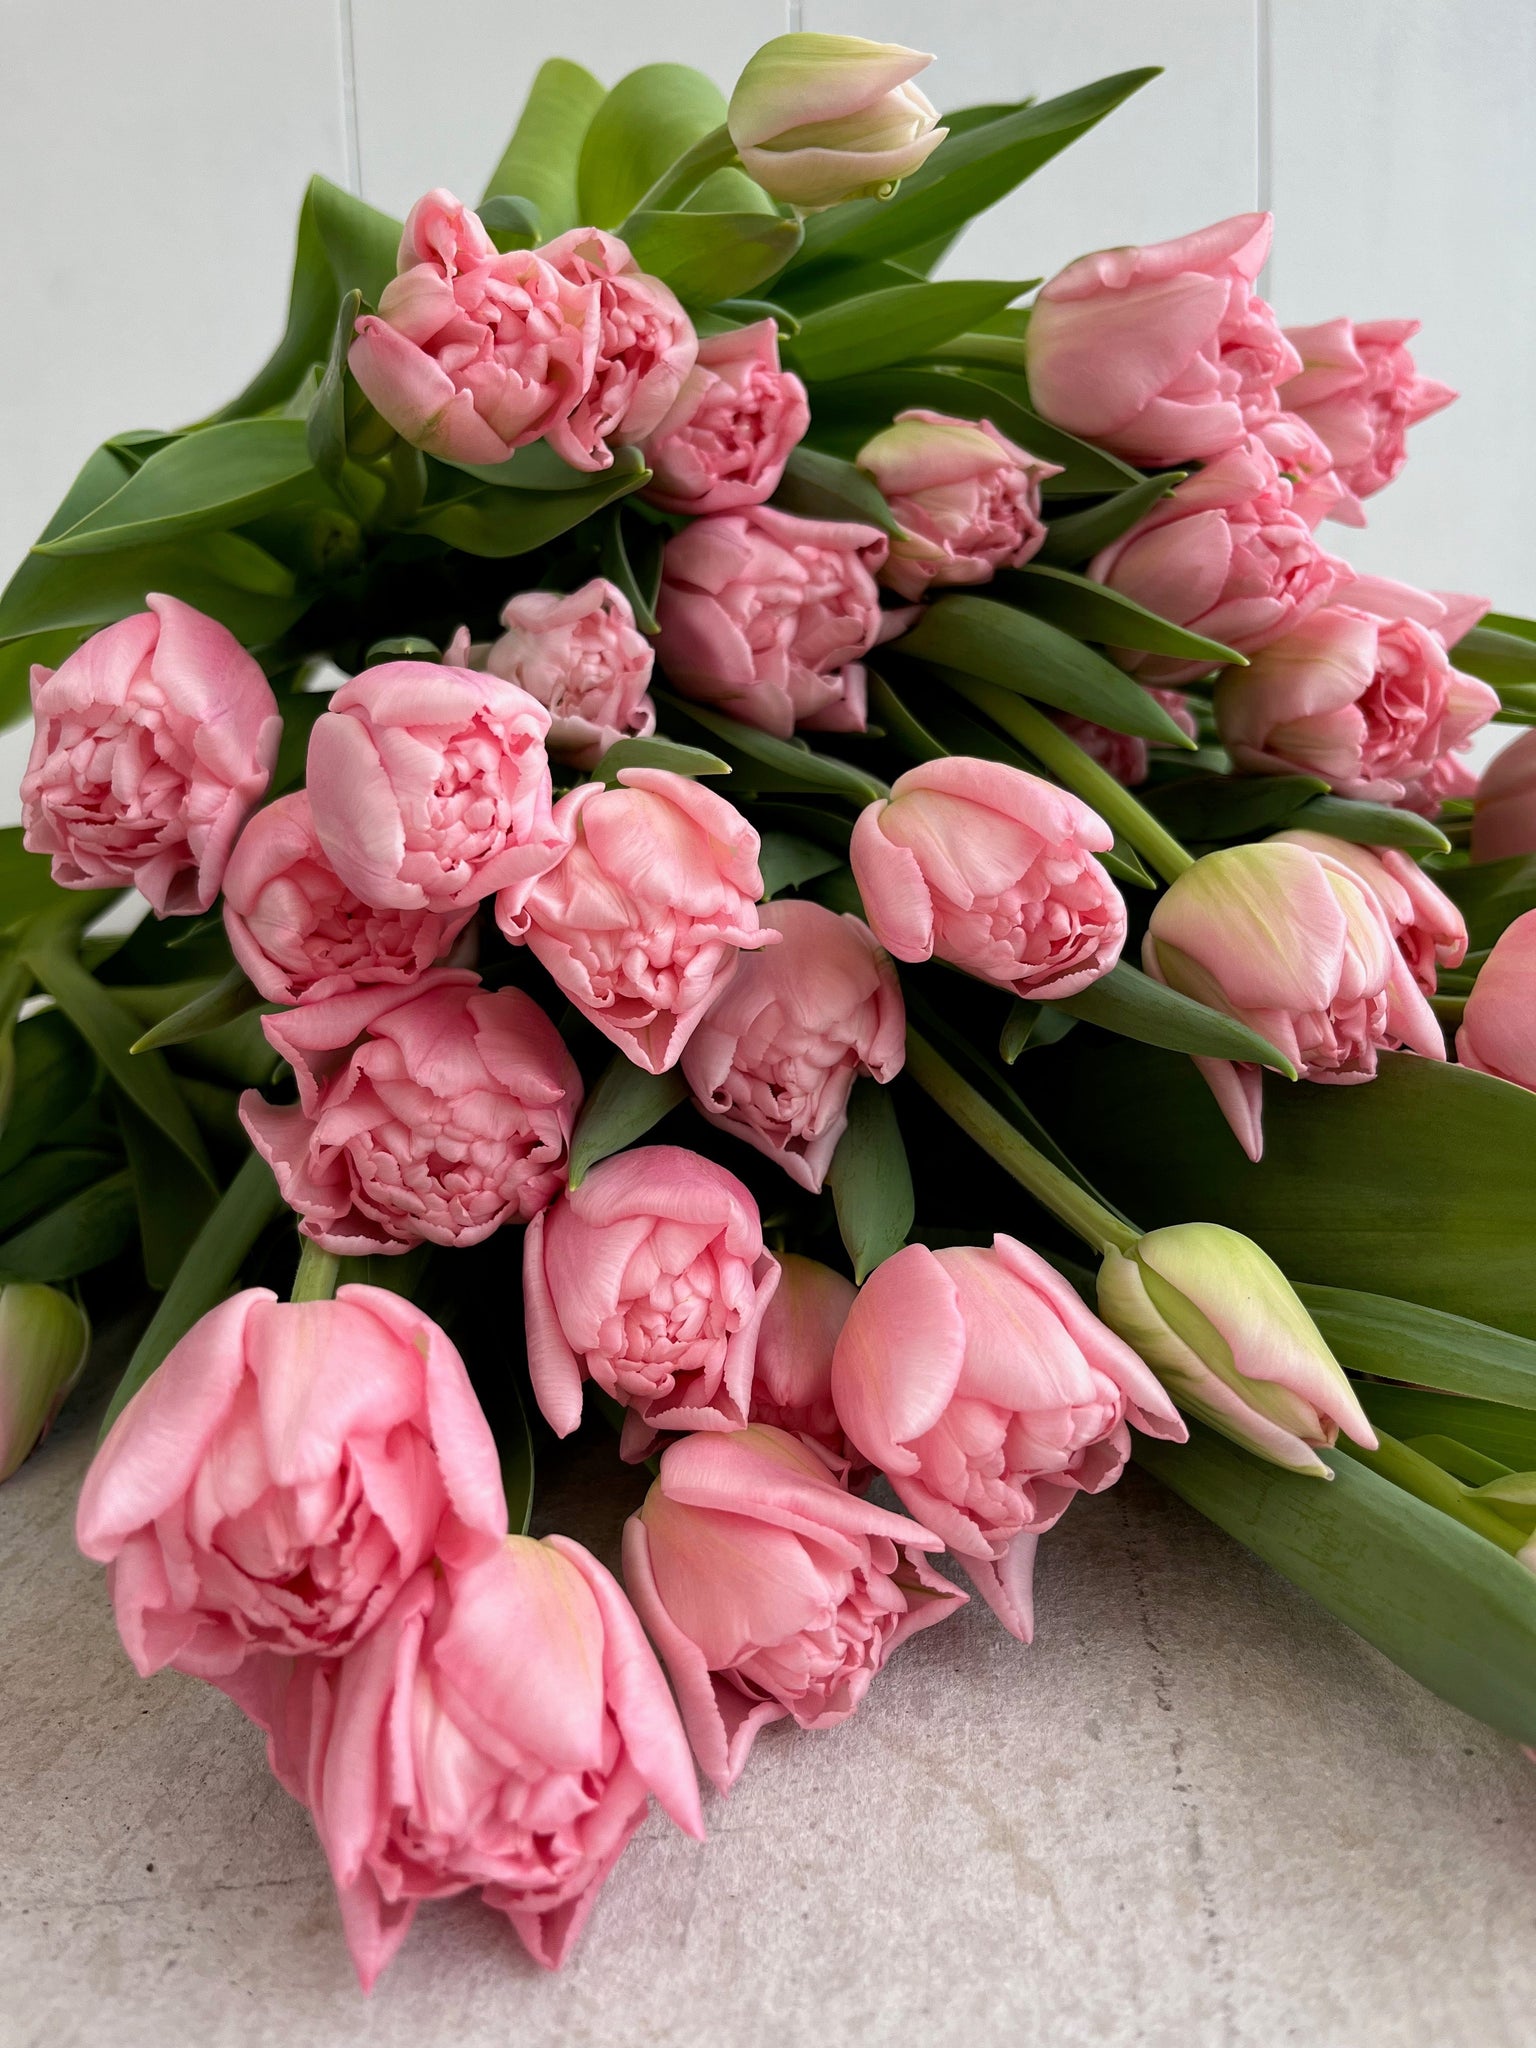 Premium Tulips, 25 Stem Bouquet